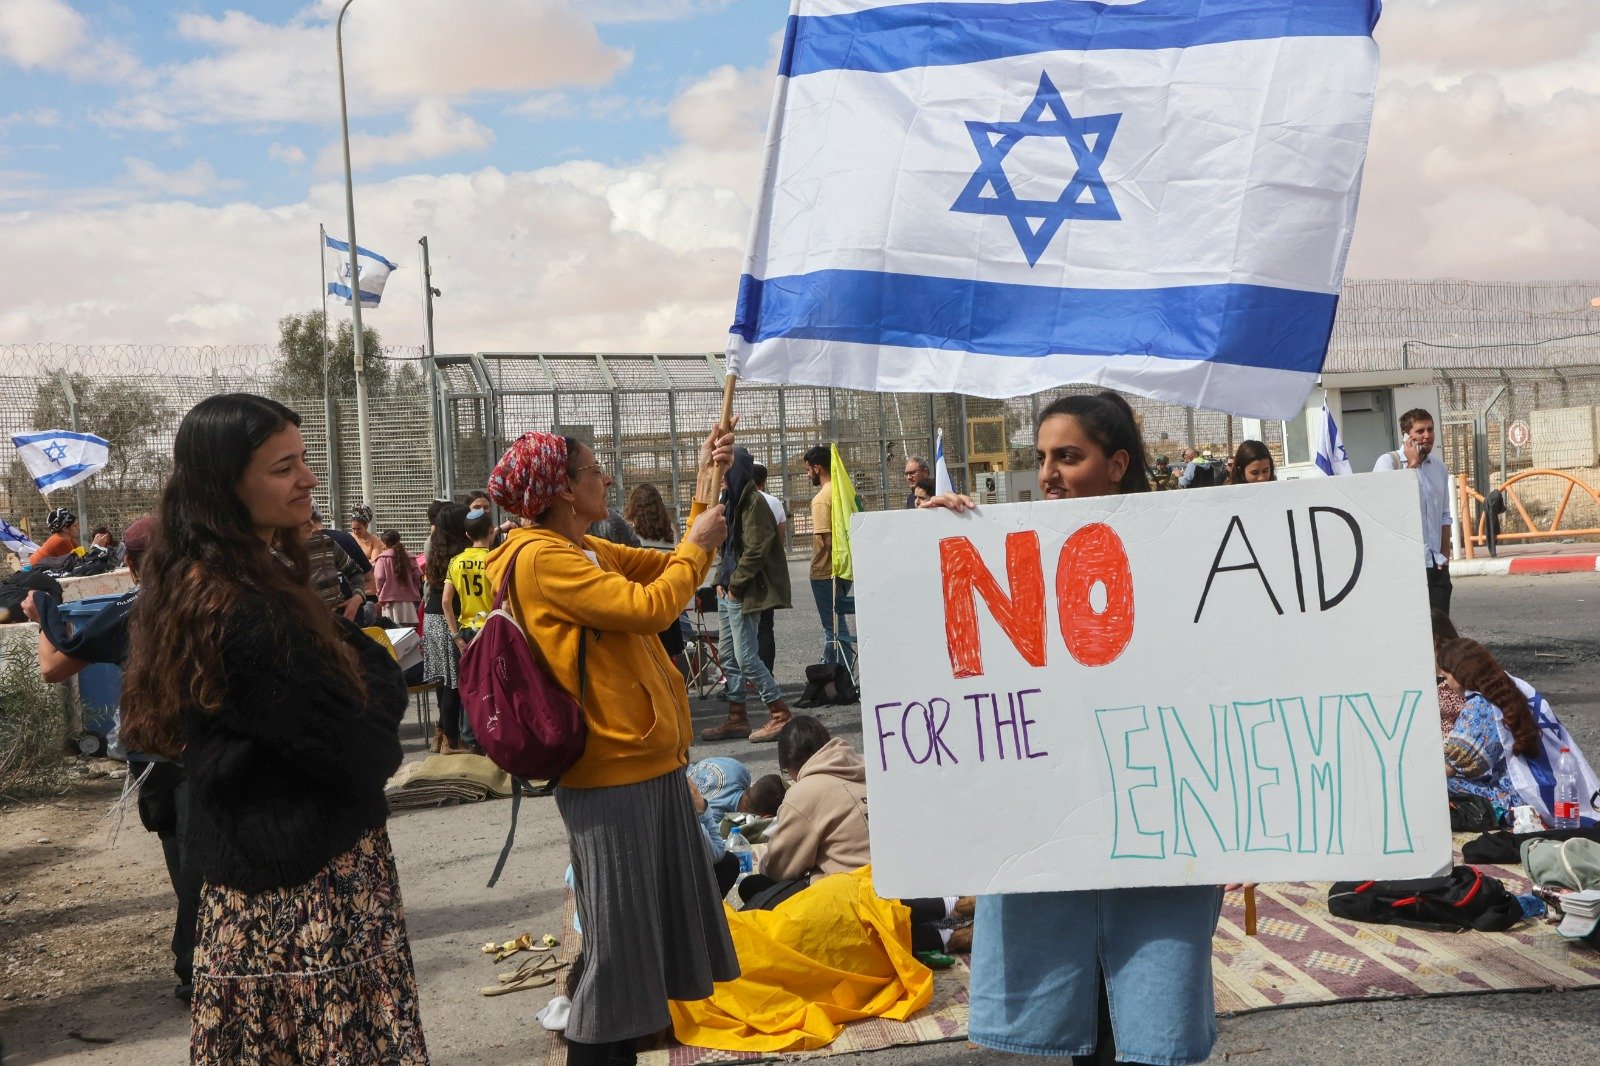 以色列民眾連續十七周示威抗議司法改革 | Now 新聞